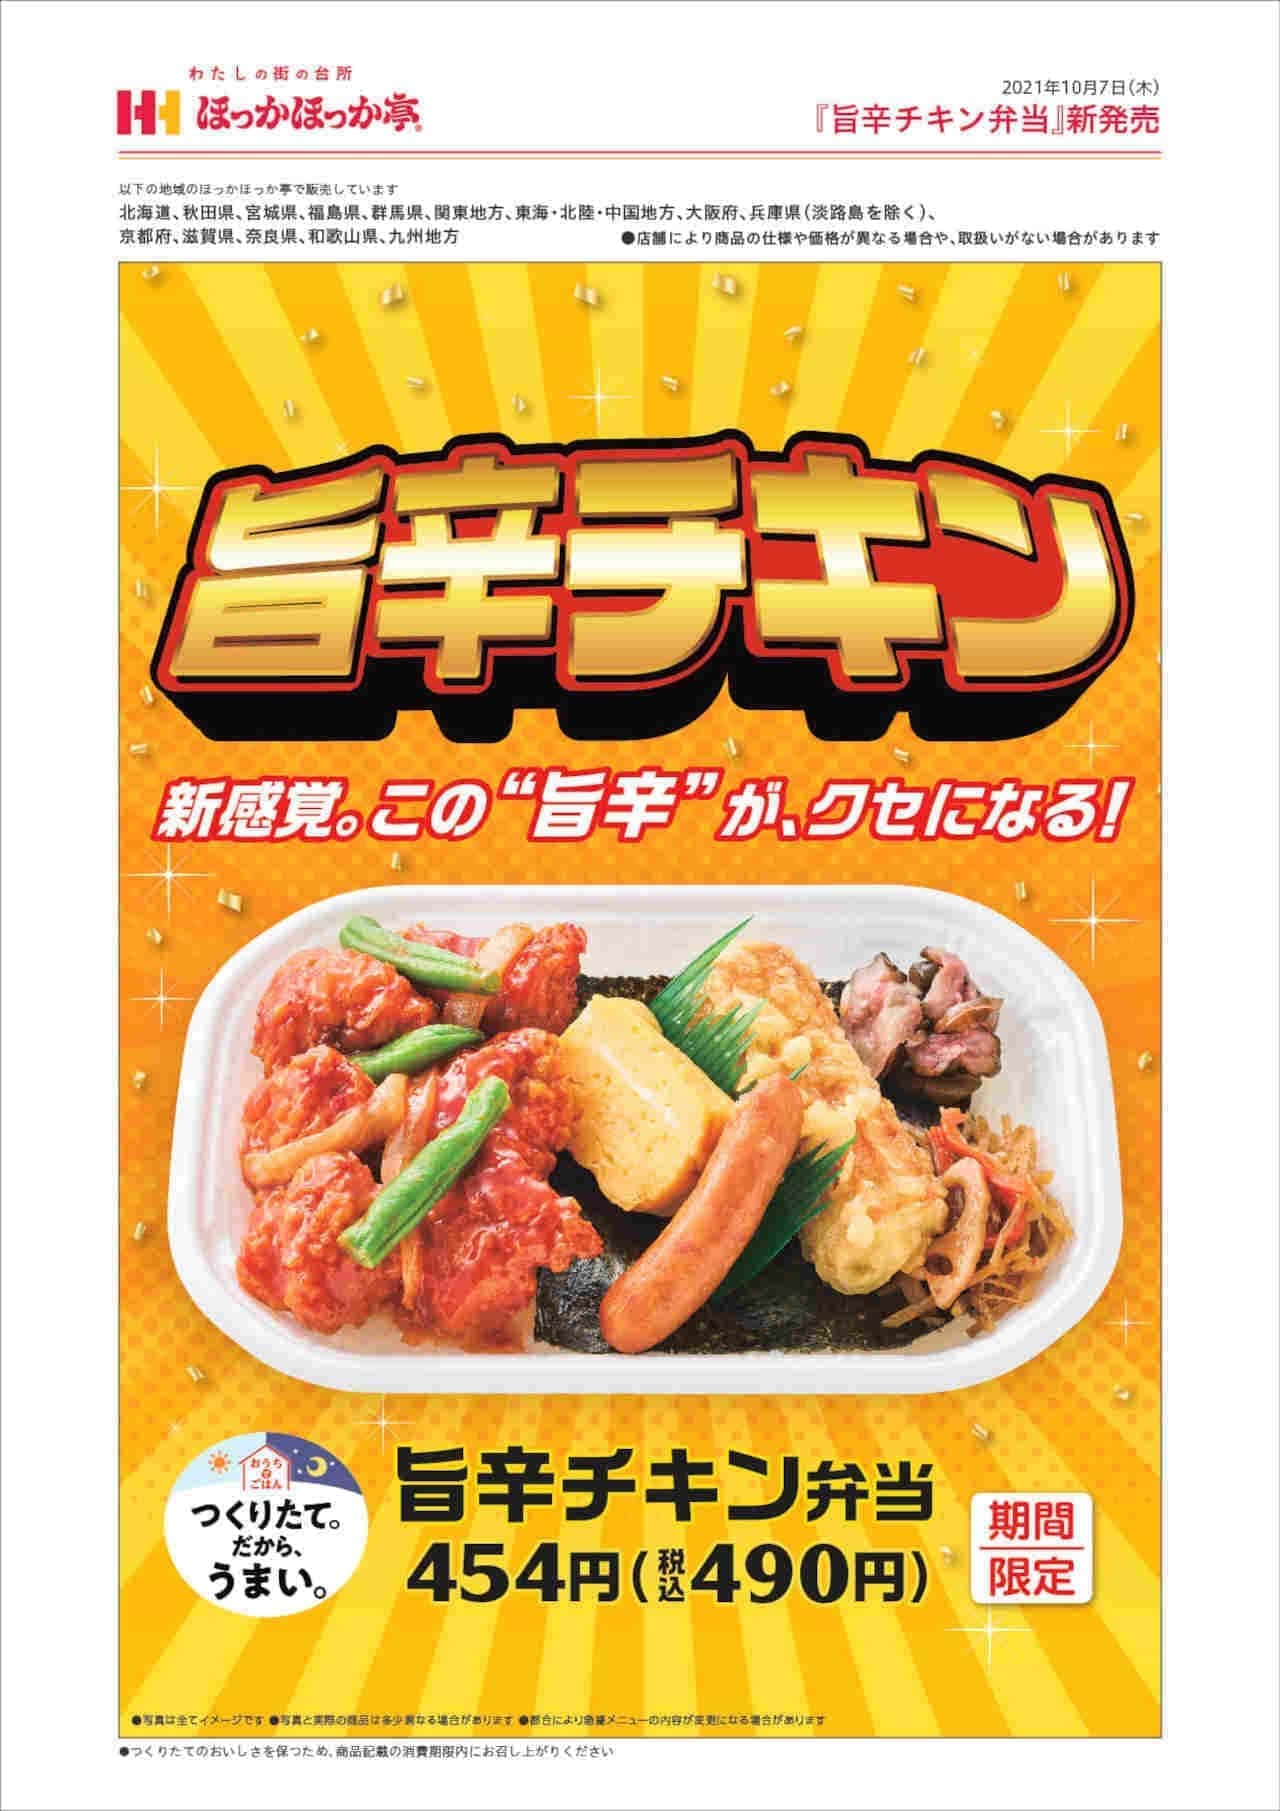 Hokka Hokka Tei "Spicy Chicken Bento"